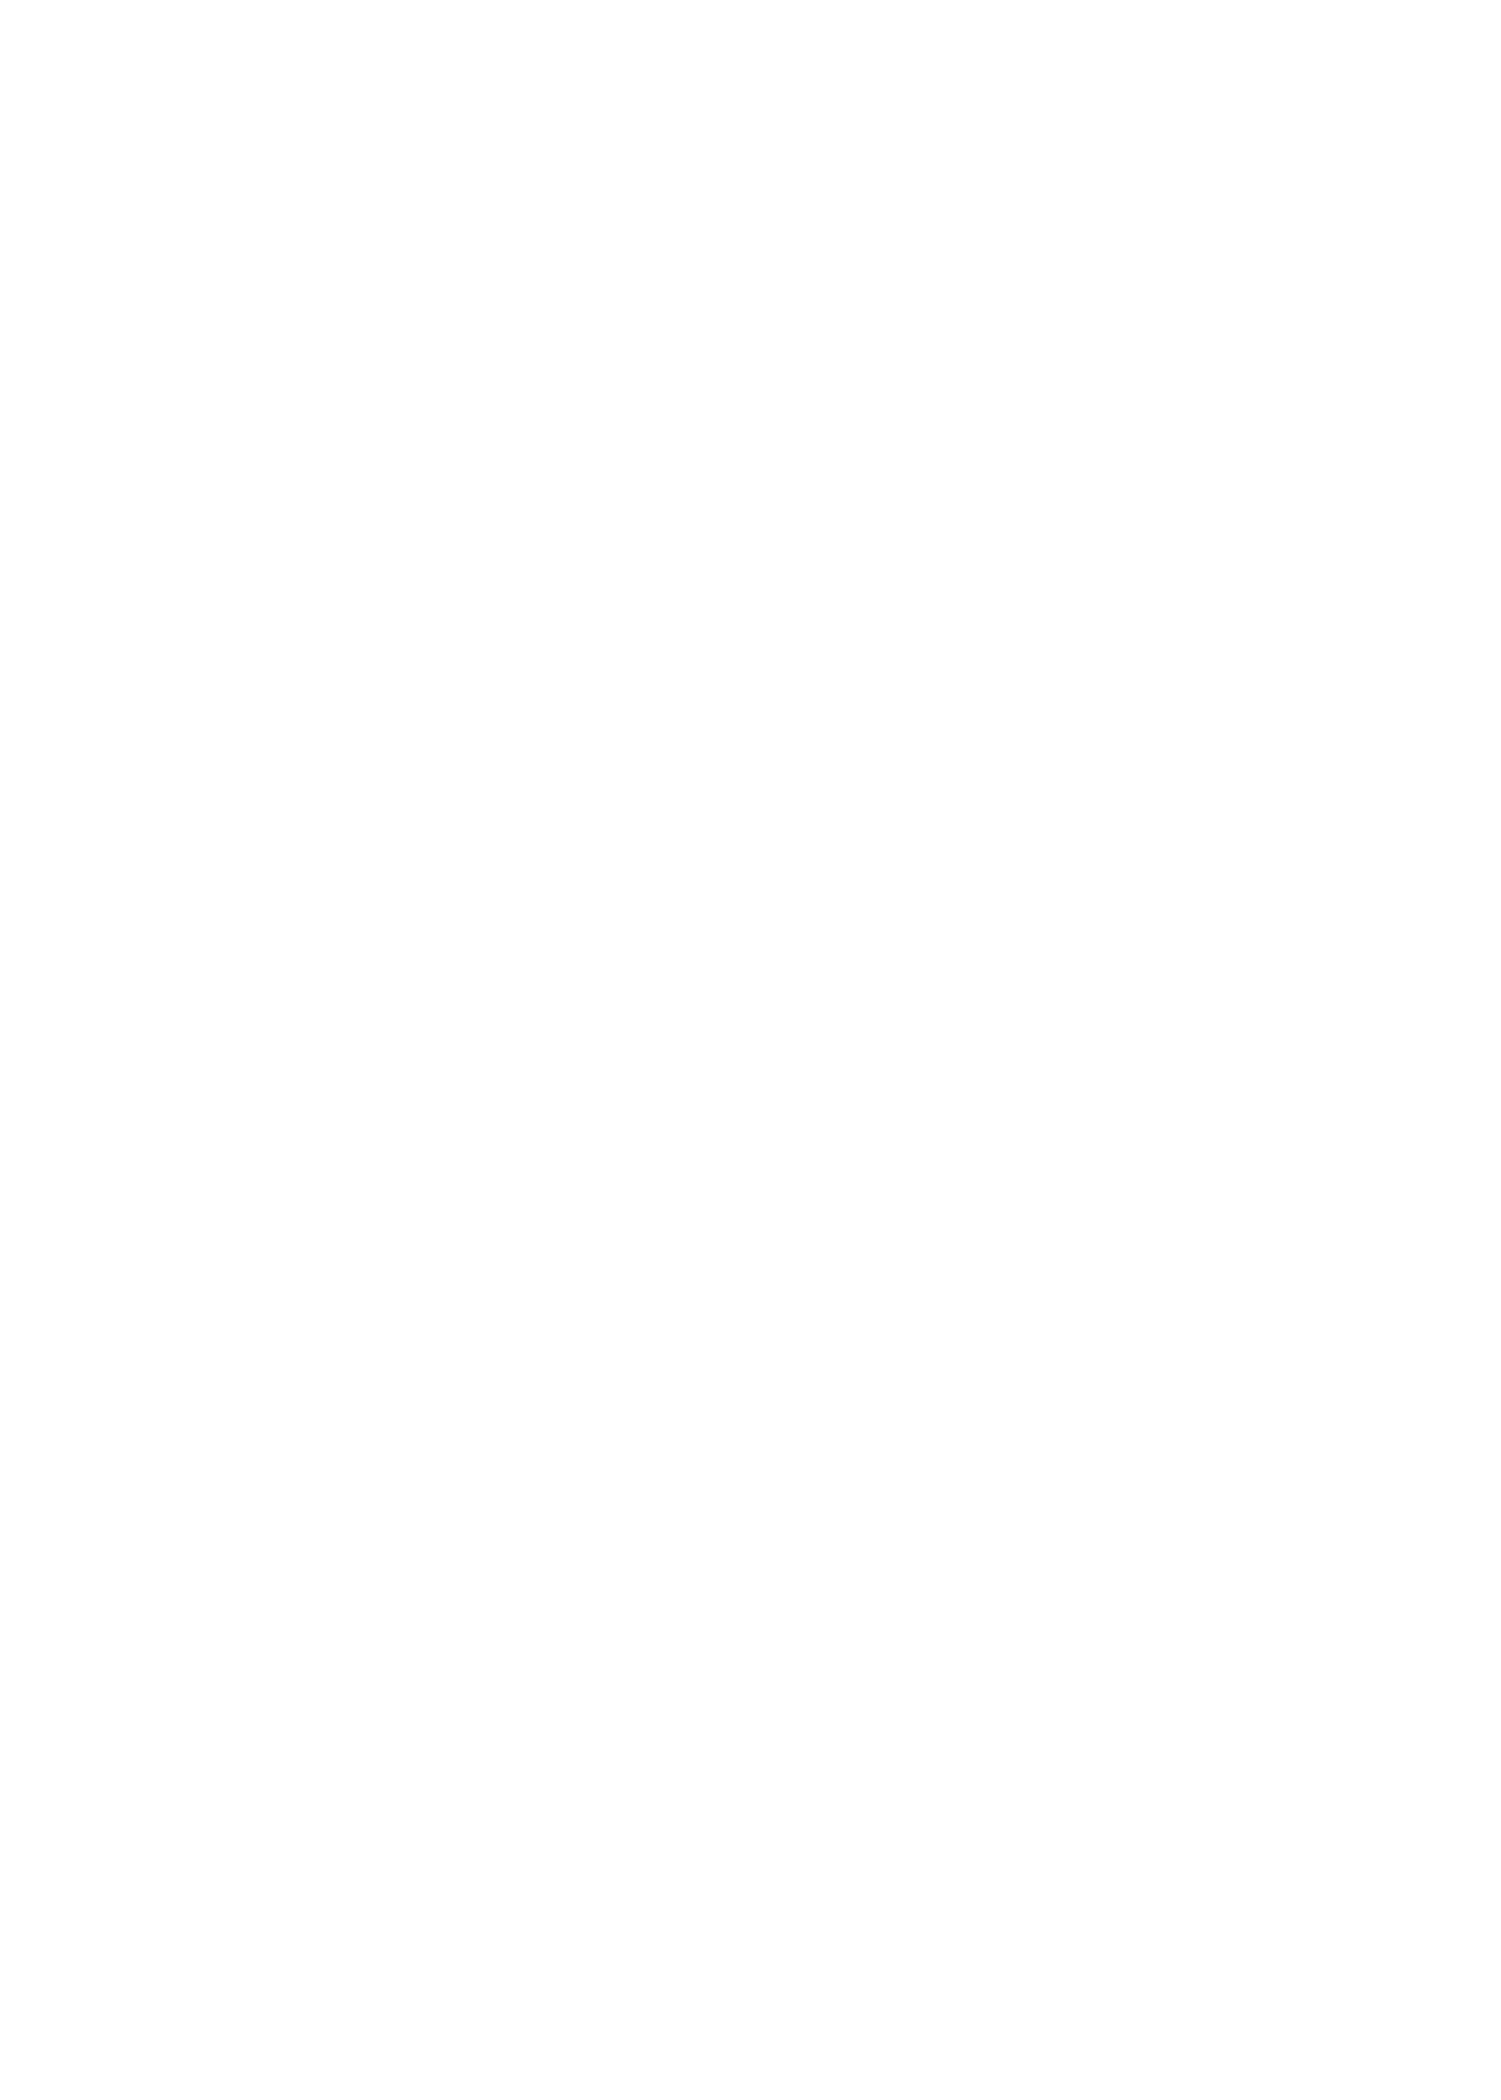 Allies Inc logo